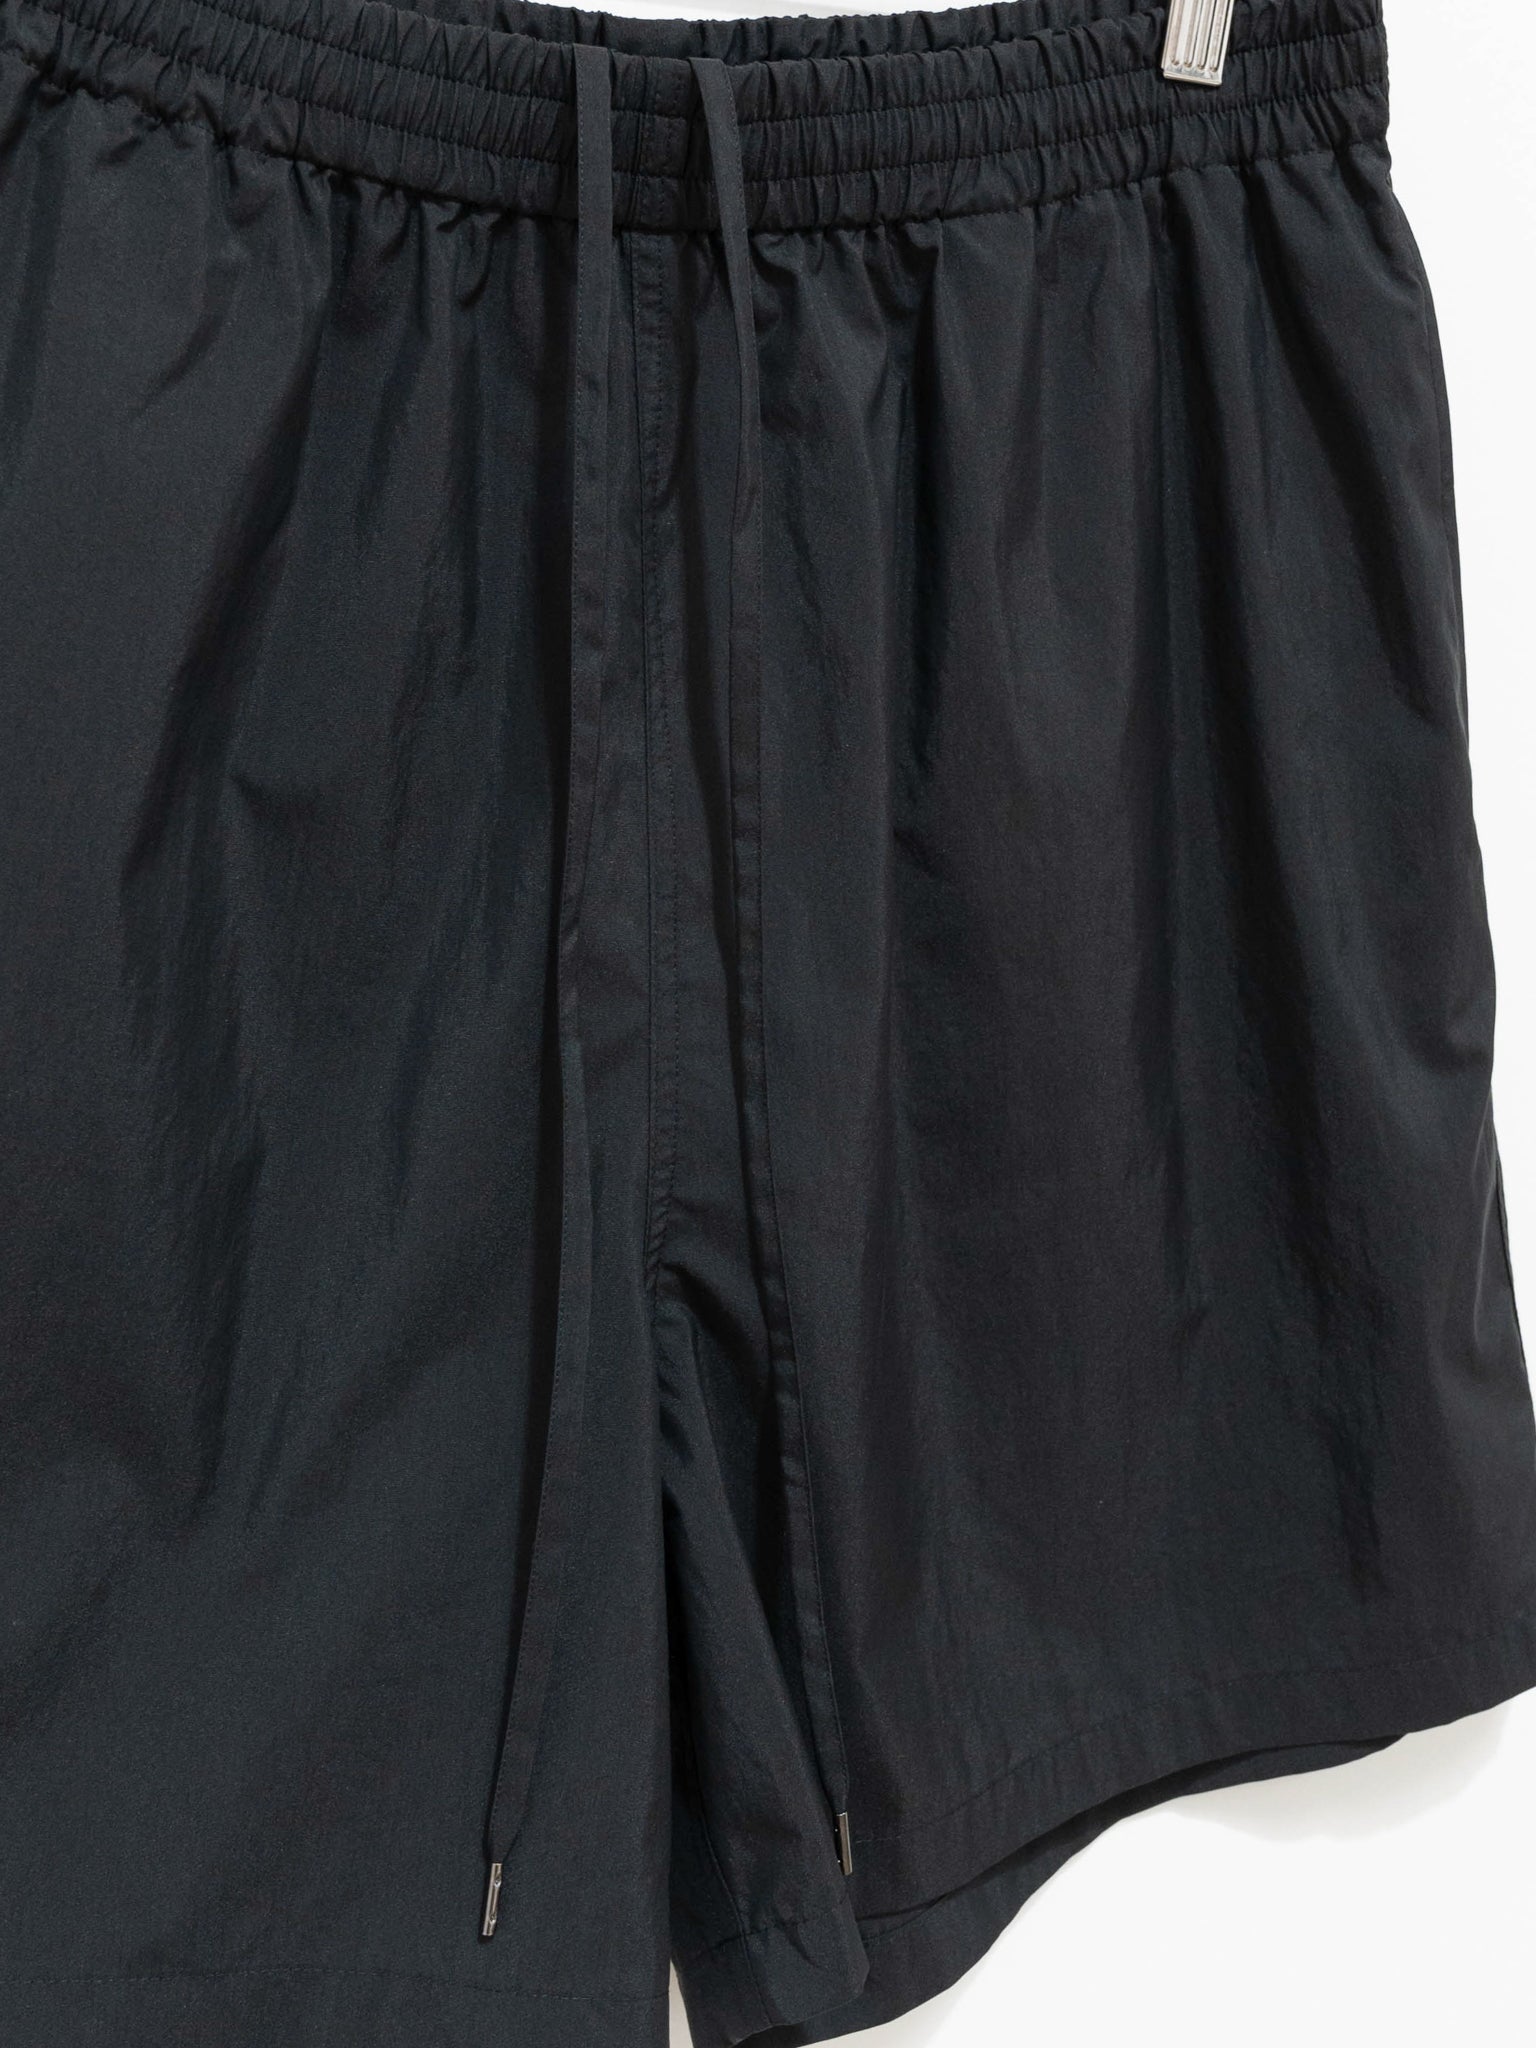 Namu Shop - Auralee Washed Cotton Nylon Weather Easy Shorts - Black